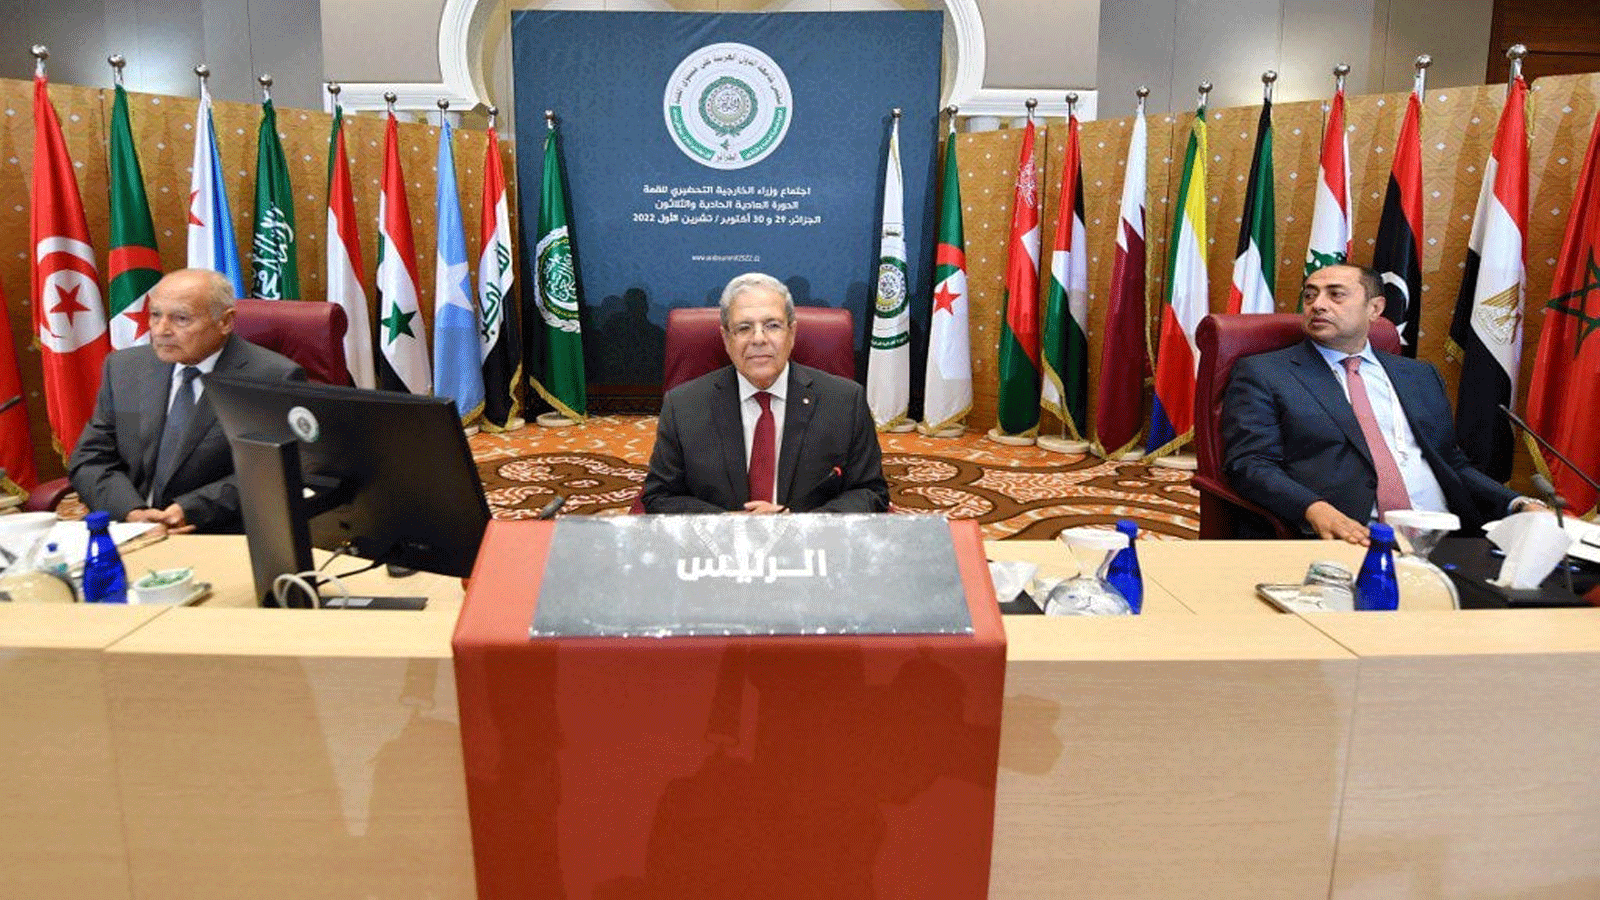 وزير الخارجية التونسي عثمان جارندي (وسط)، يترأس الجلسة الافتتاحية للاجتماع التحضيري لوزراء الخارجية العرب. 29 تشرين الأول\أكتوبر 2022 في العاصمة الجزائر 